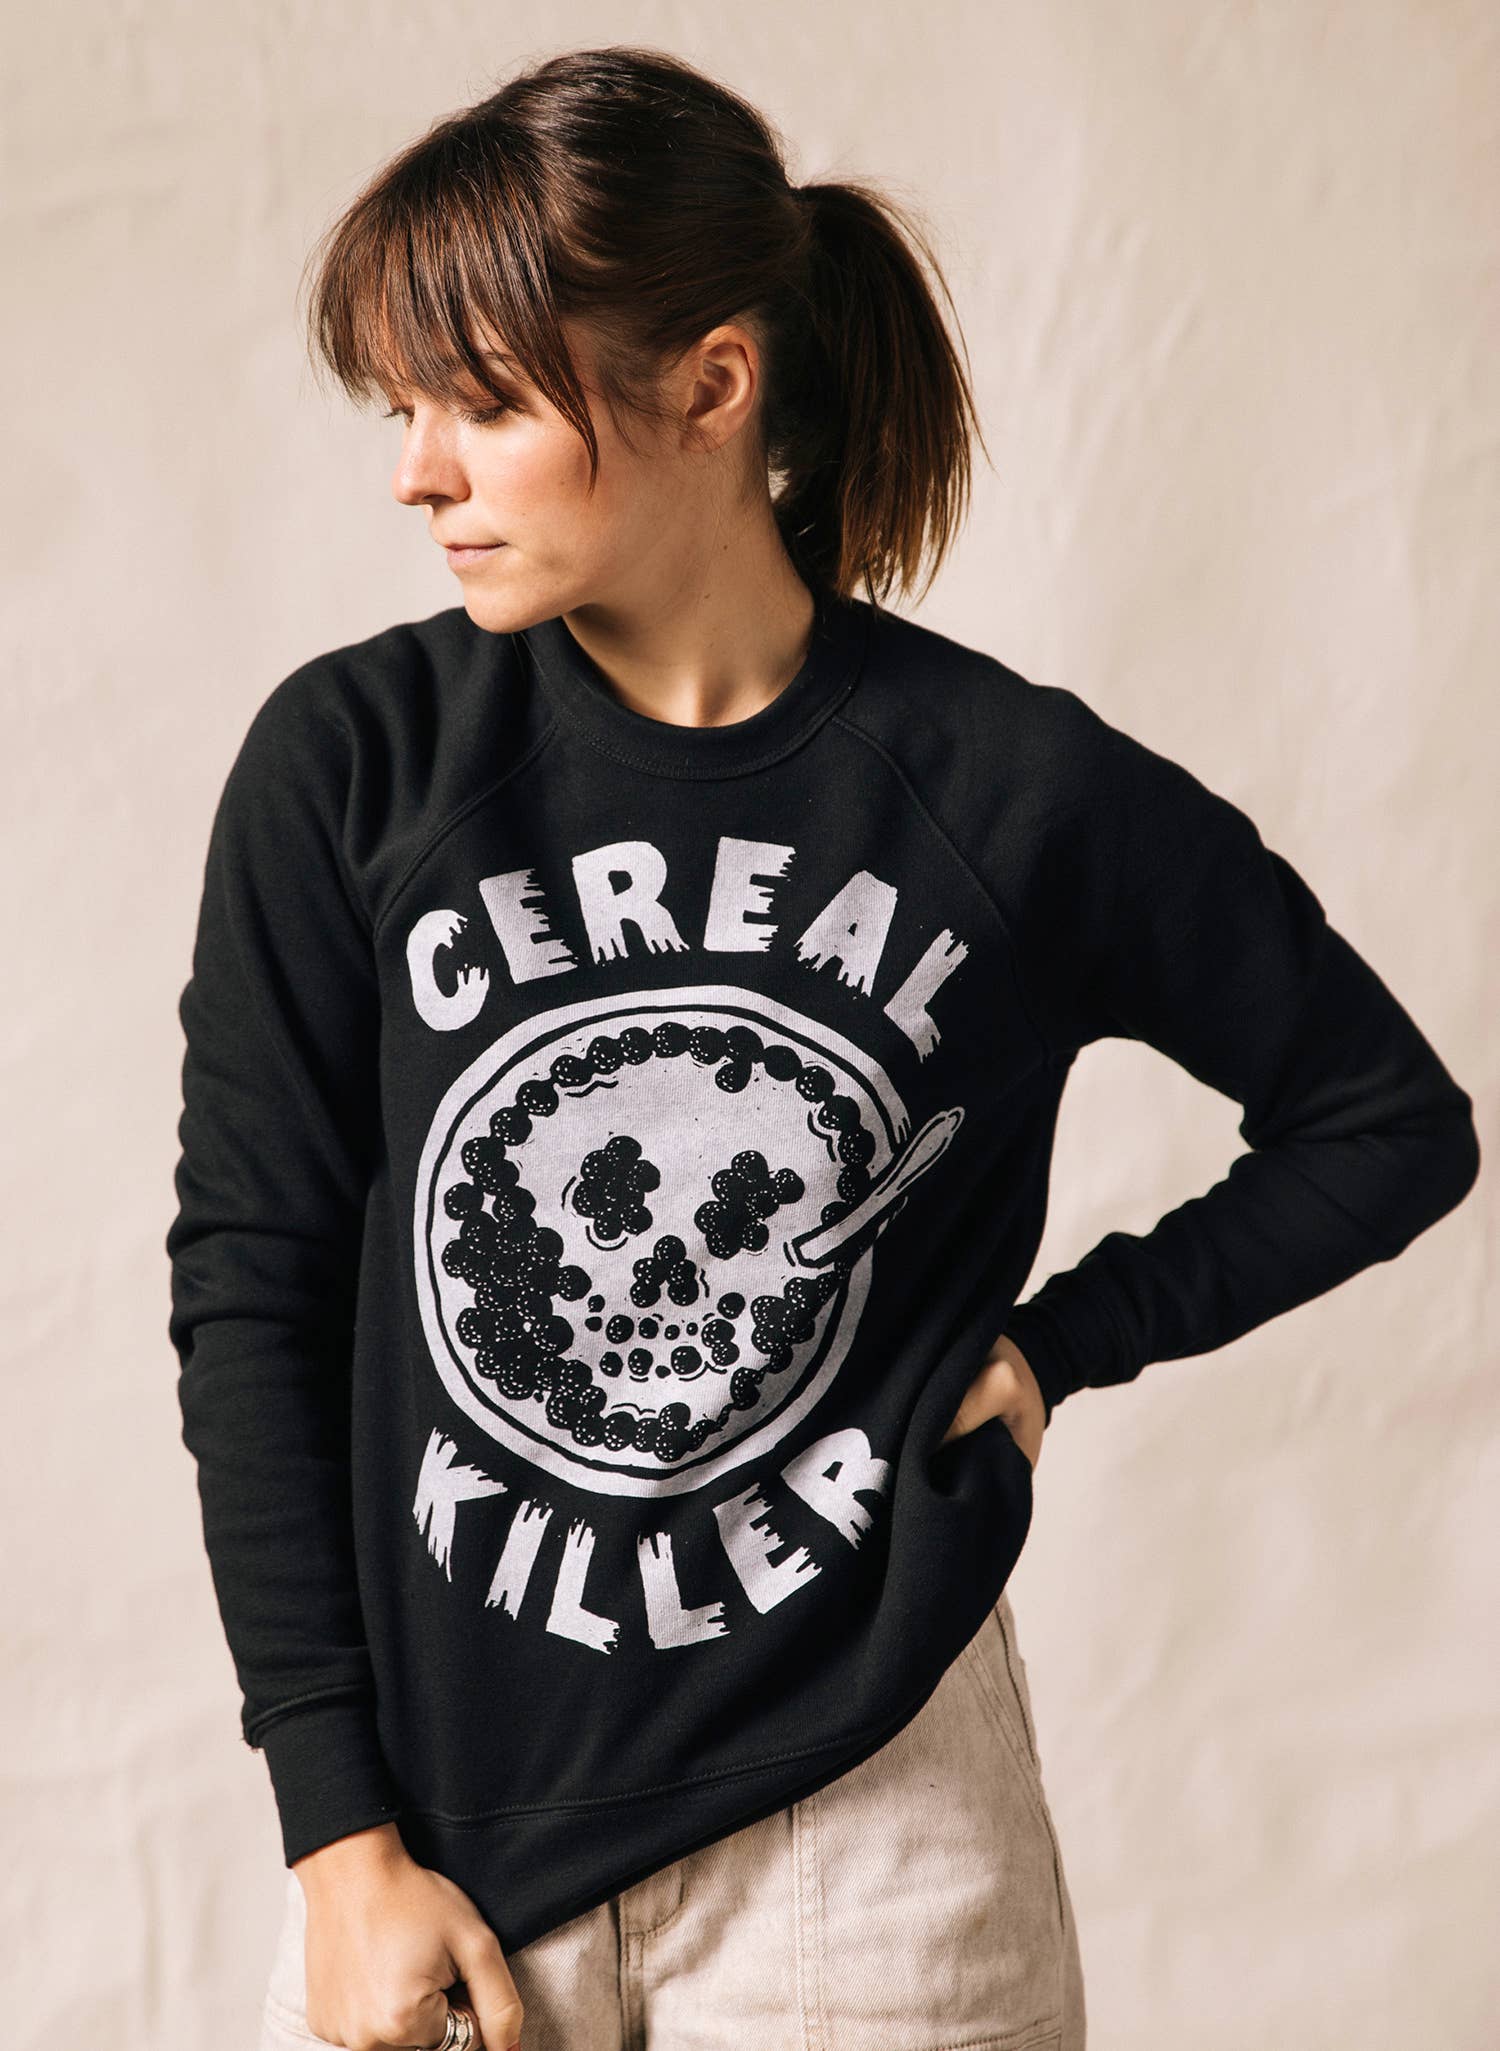 Cereal Killer Sweatshirt - La De Da